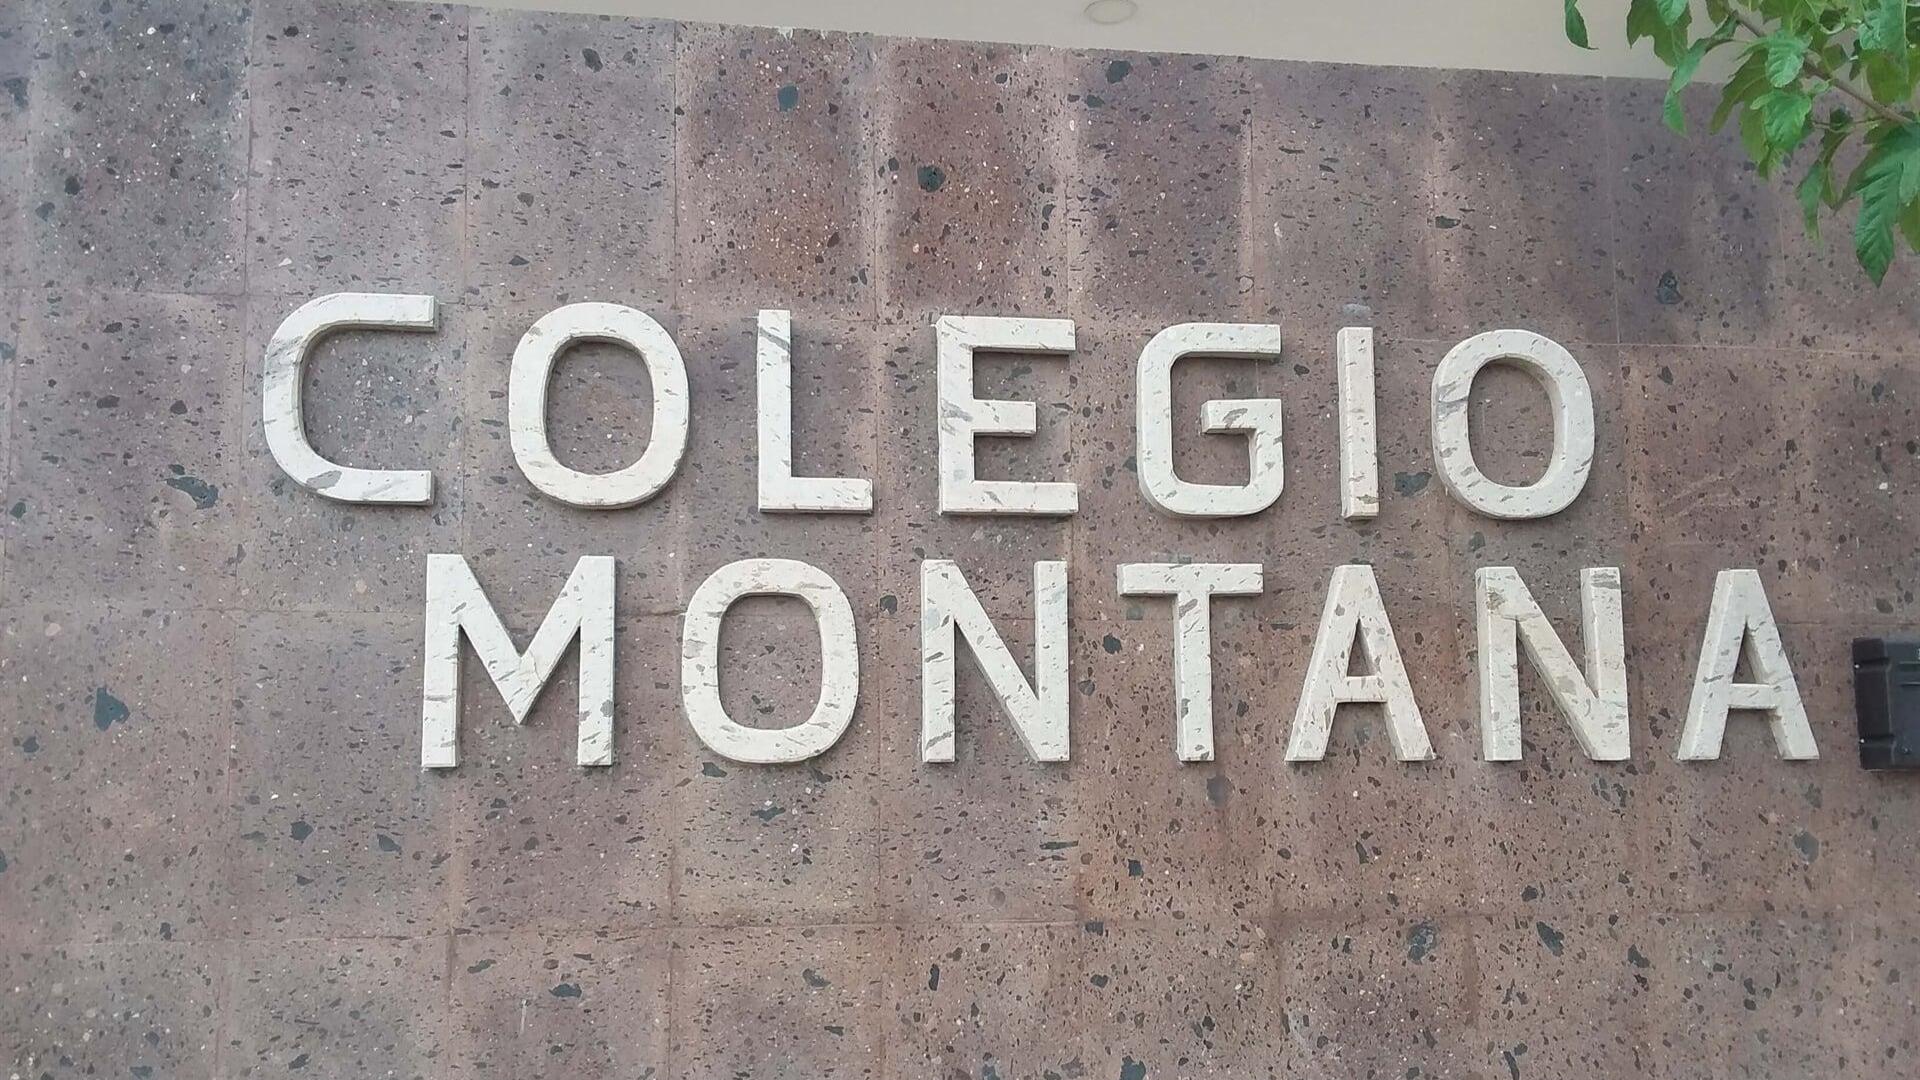 Images Colegio Montana